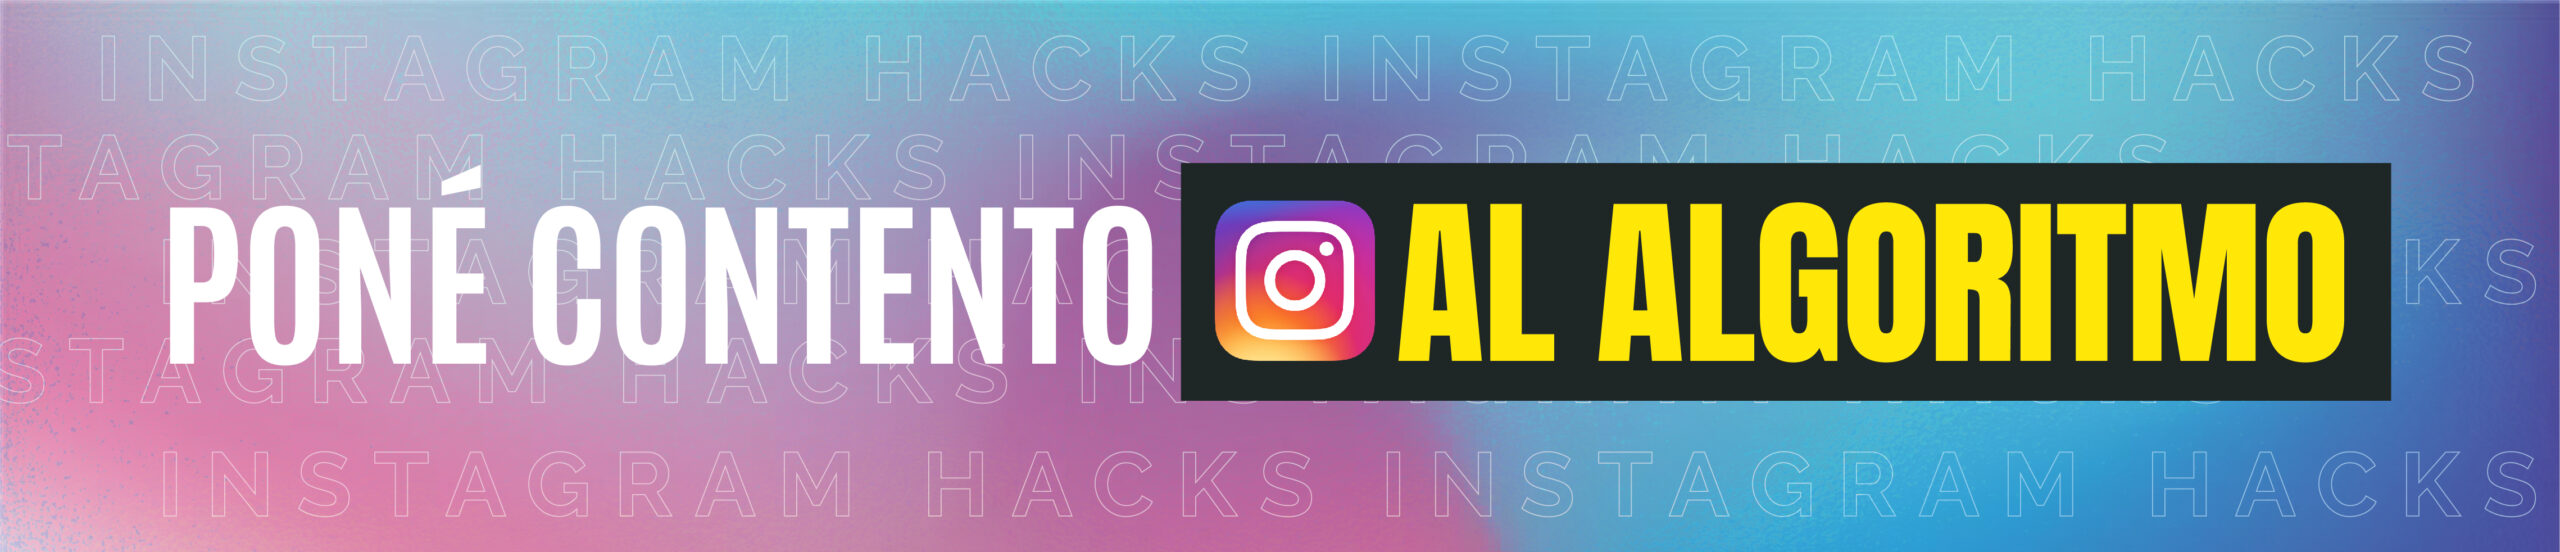 Técnicas y trucos para poner contento al algoritmo de Instagram